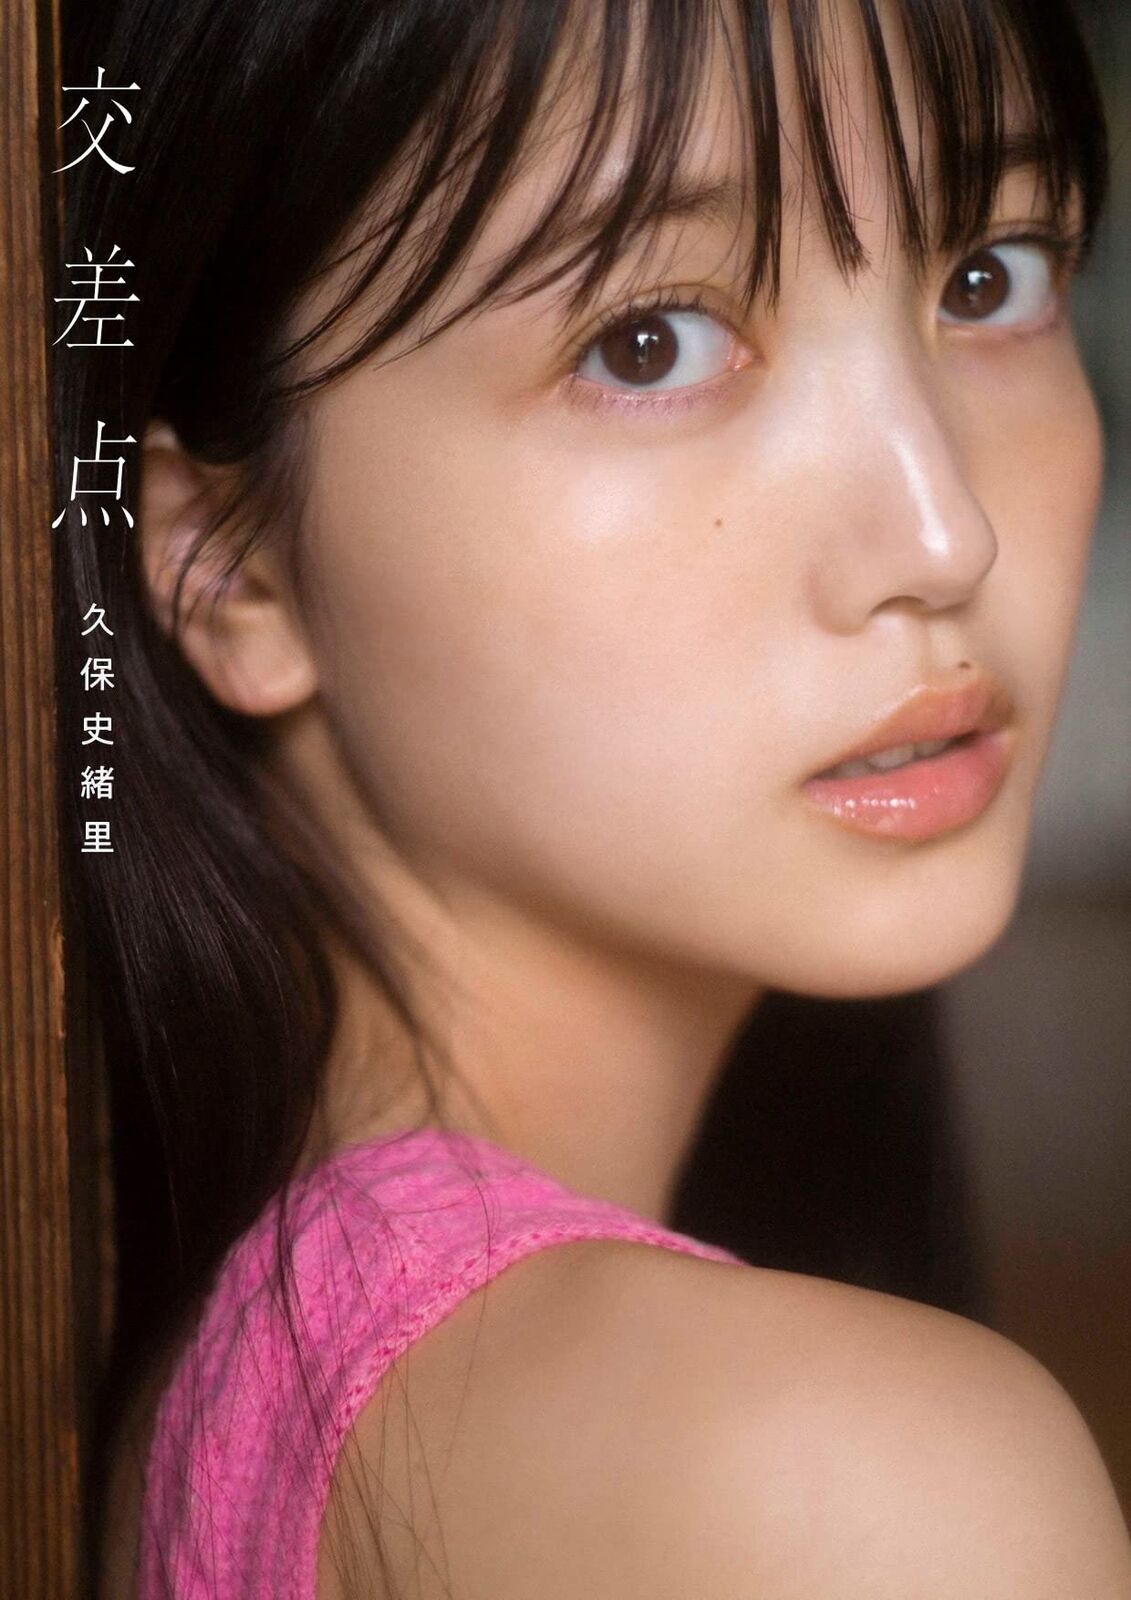 Nogizaka46 Shiori Kubo 1st Photo Intersection Photograph Idol Japanese Book New